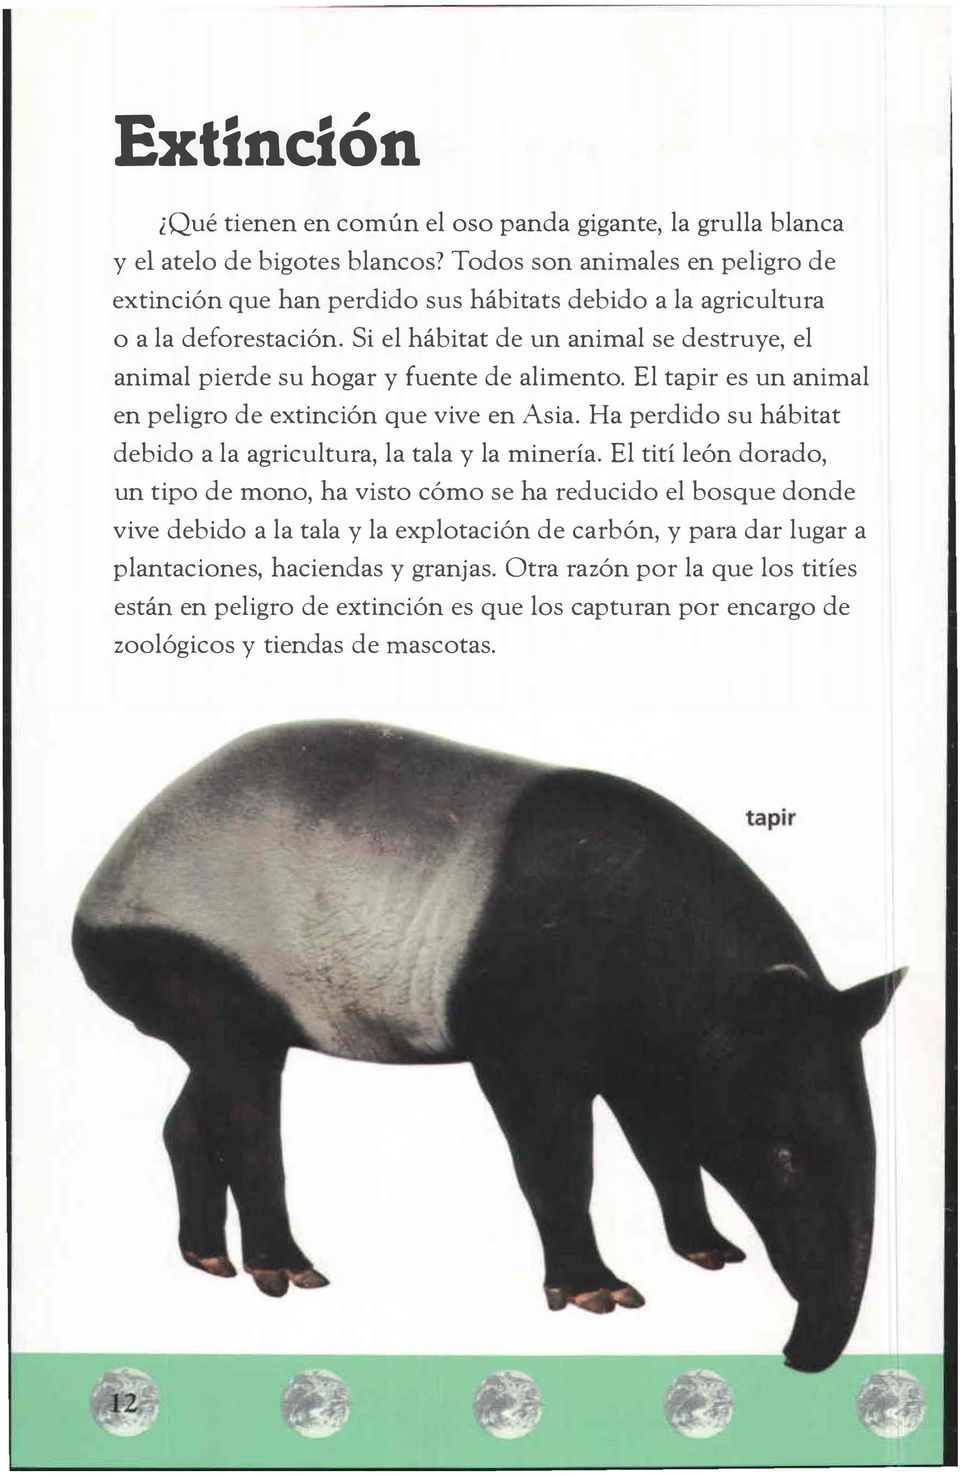 Si el hábitat de un animal se destruye, el animal pierde su hogar y fuente de alimento. El tapir es un animal en peligro de extinción que vive en Asia.